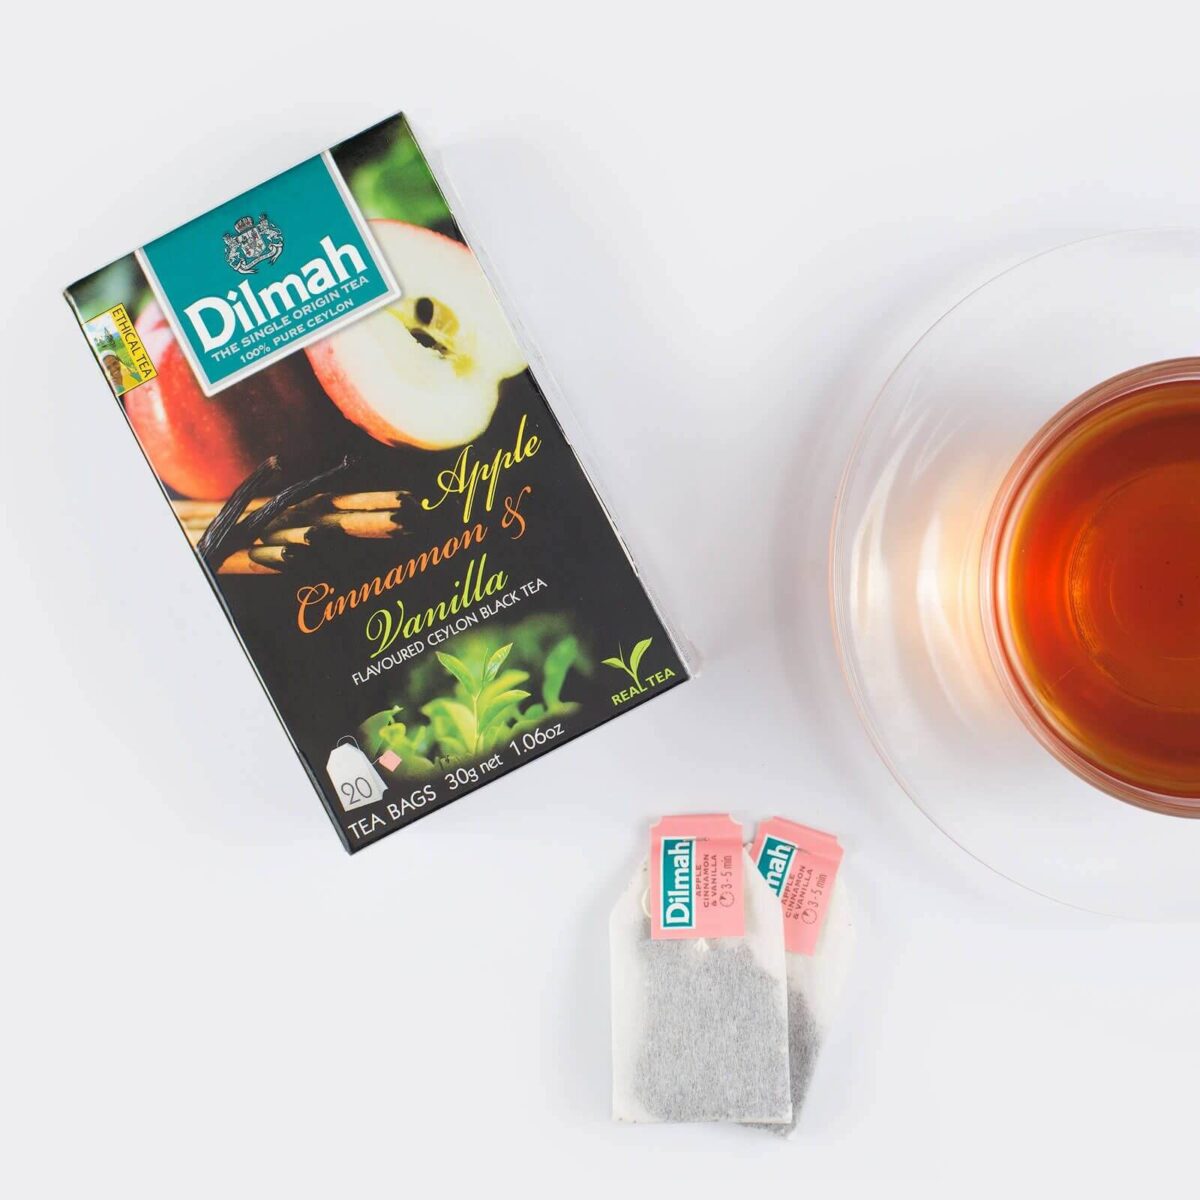 Dilmah Apple-Cinnamon-and-Vanilla-flavoured ceylon tea